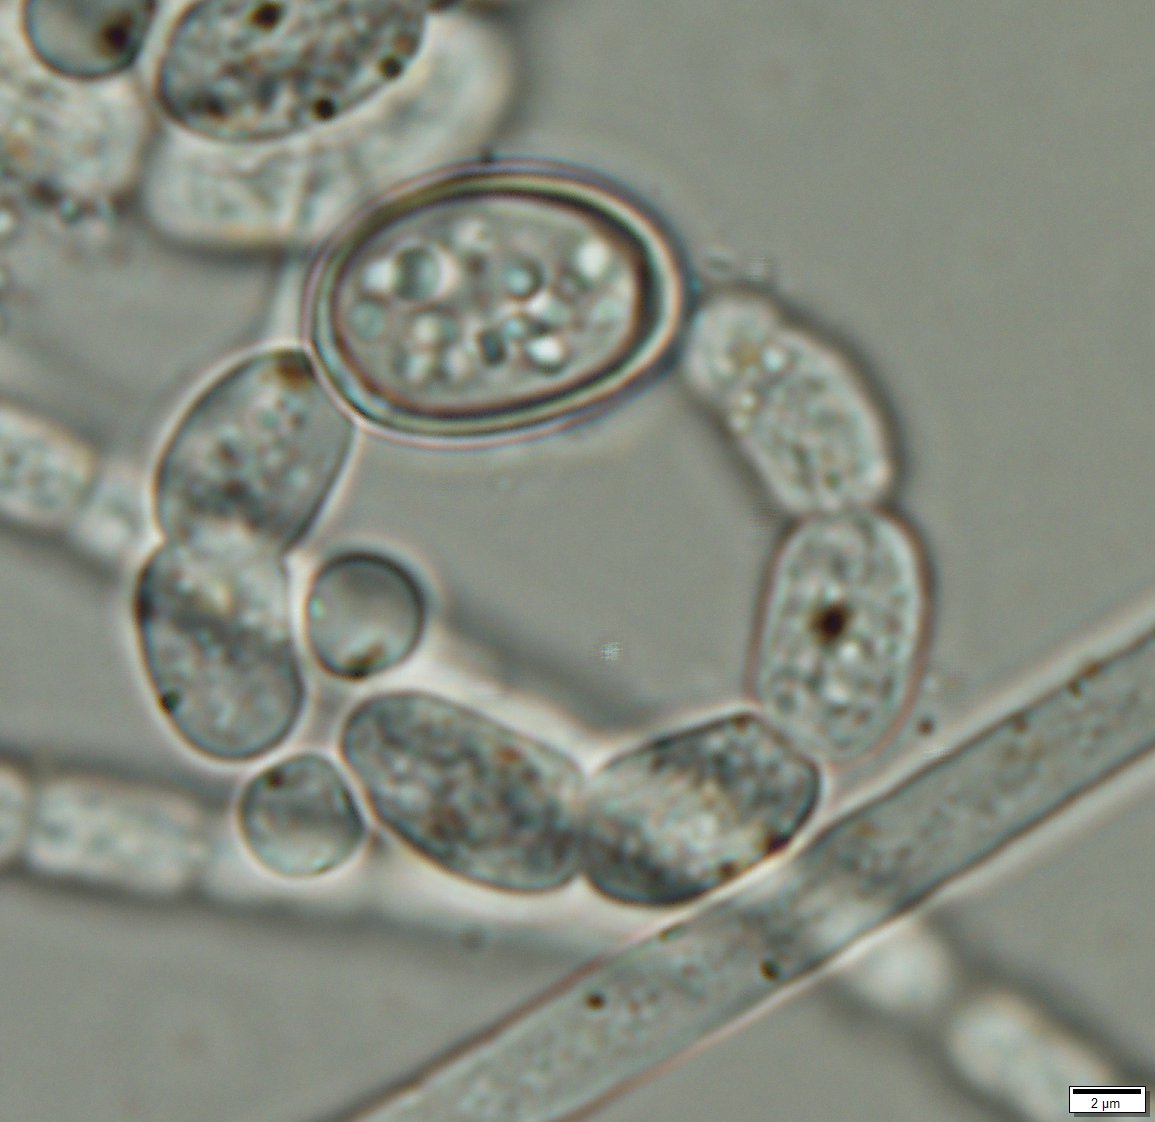 Artículo | La importancia de usar el biovolumen en estudios de fitoplancton y monitoreo ambiental de cianobacterias